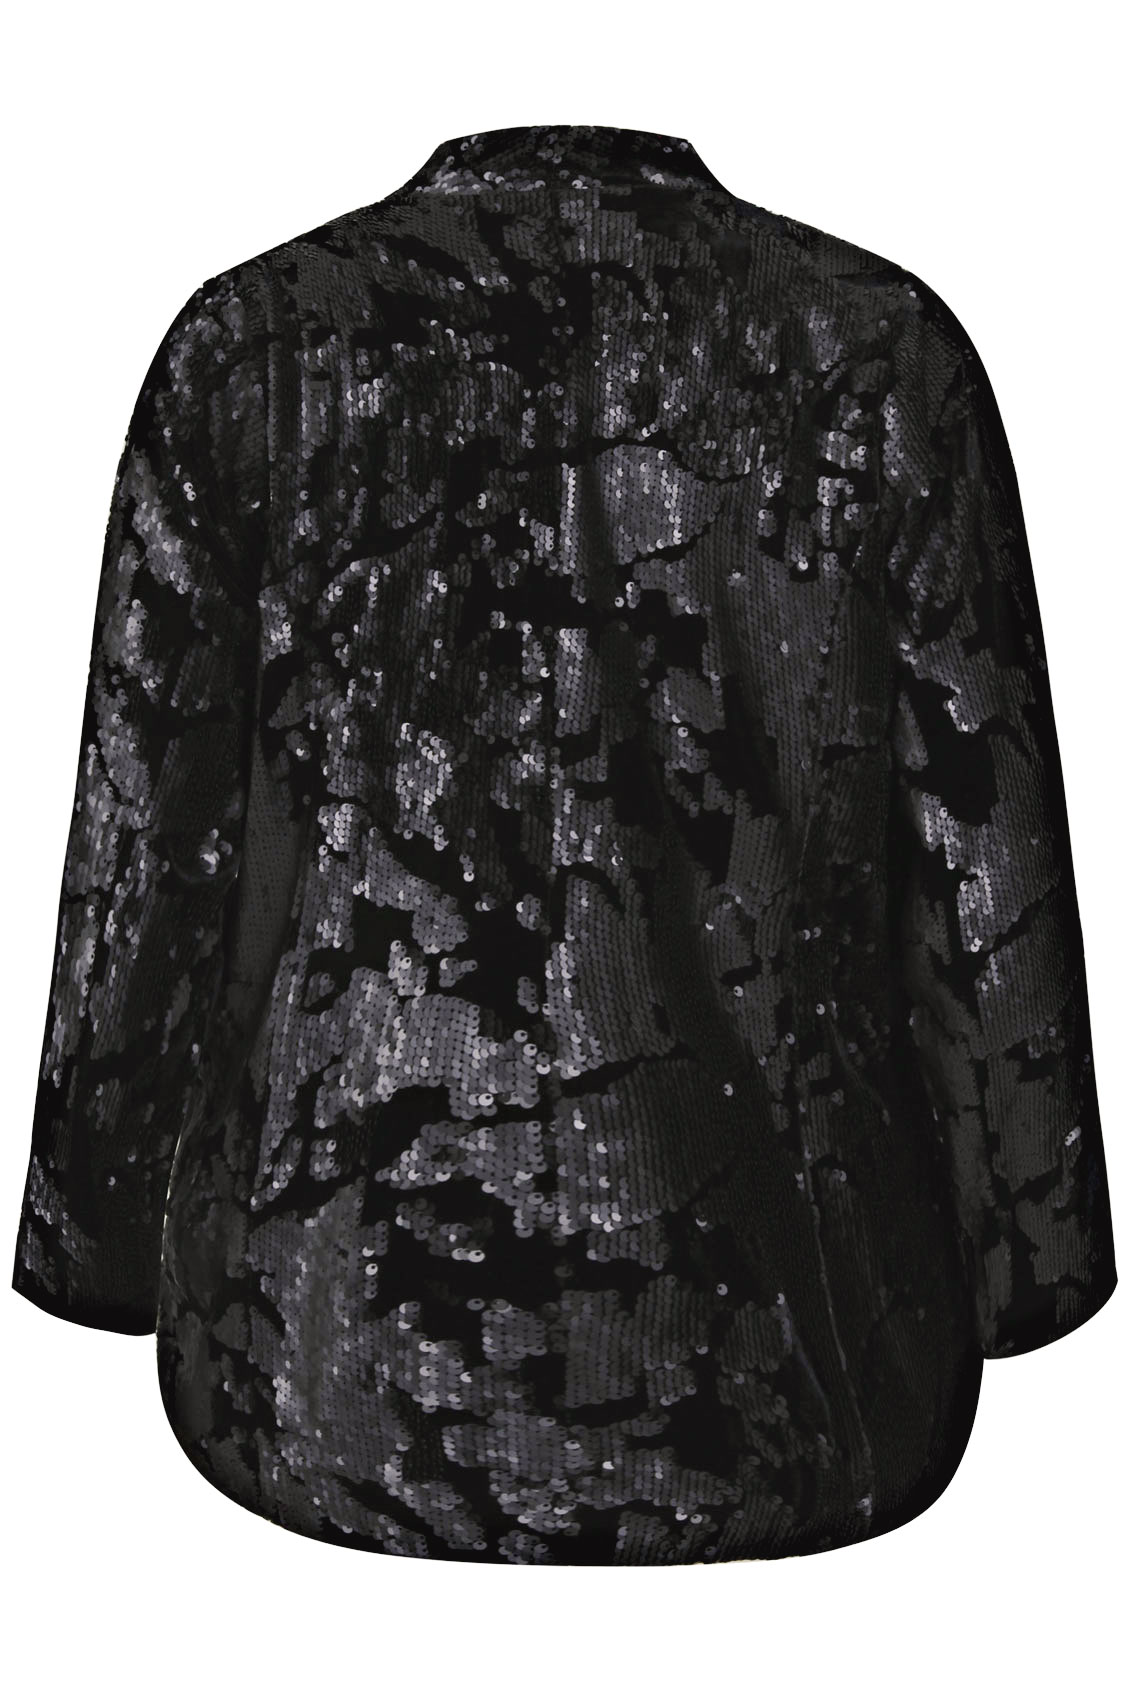 Black Velvet & Sequin Embellished Fully Lined Jacket plus Size 16 to 32